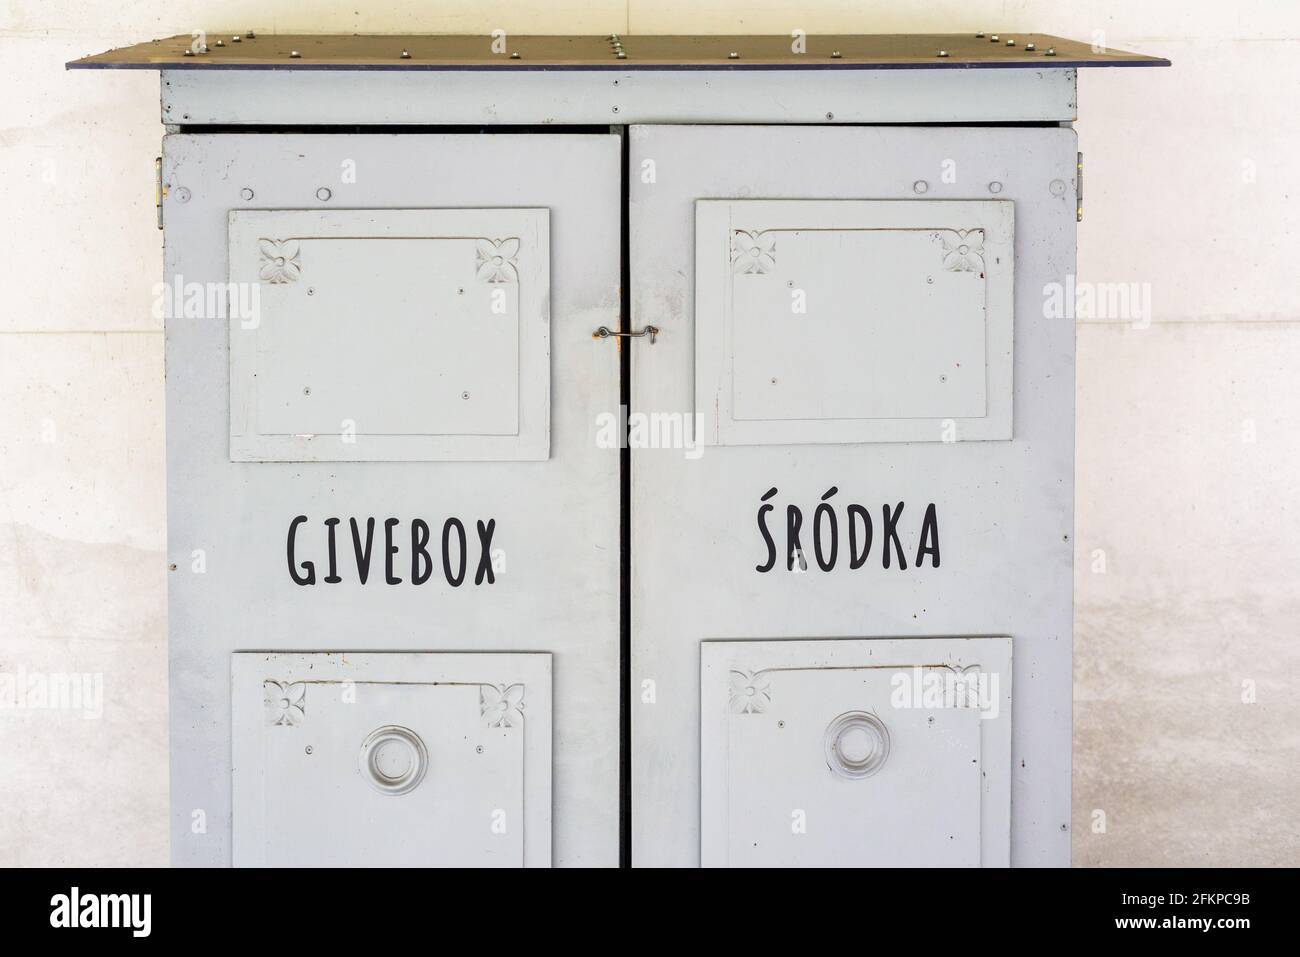 Poznan, wielkopolskie, Poland, 01.05.2021: Givebox in Srodka, Poznan, Poland Stock Photo